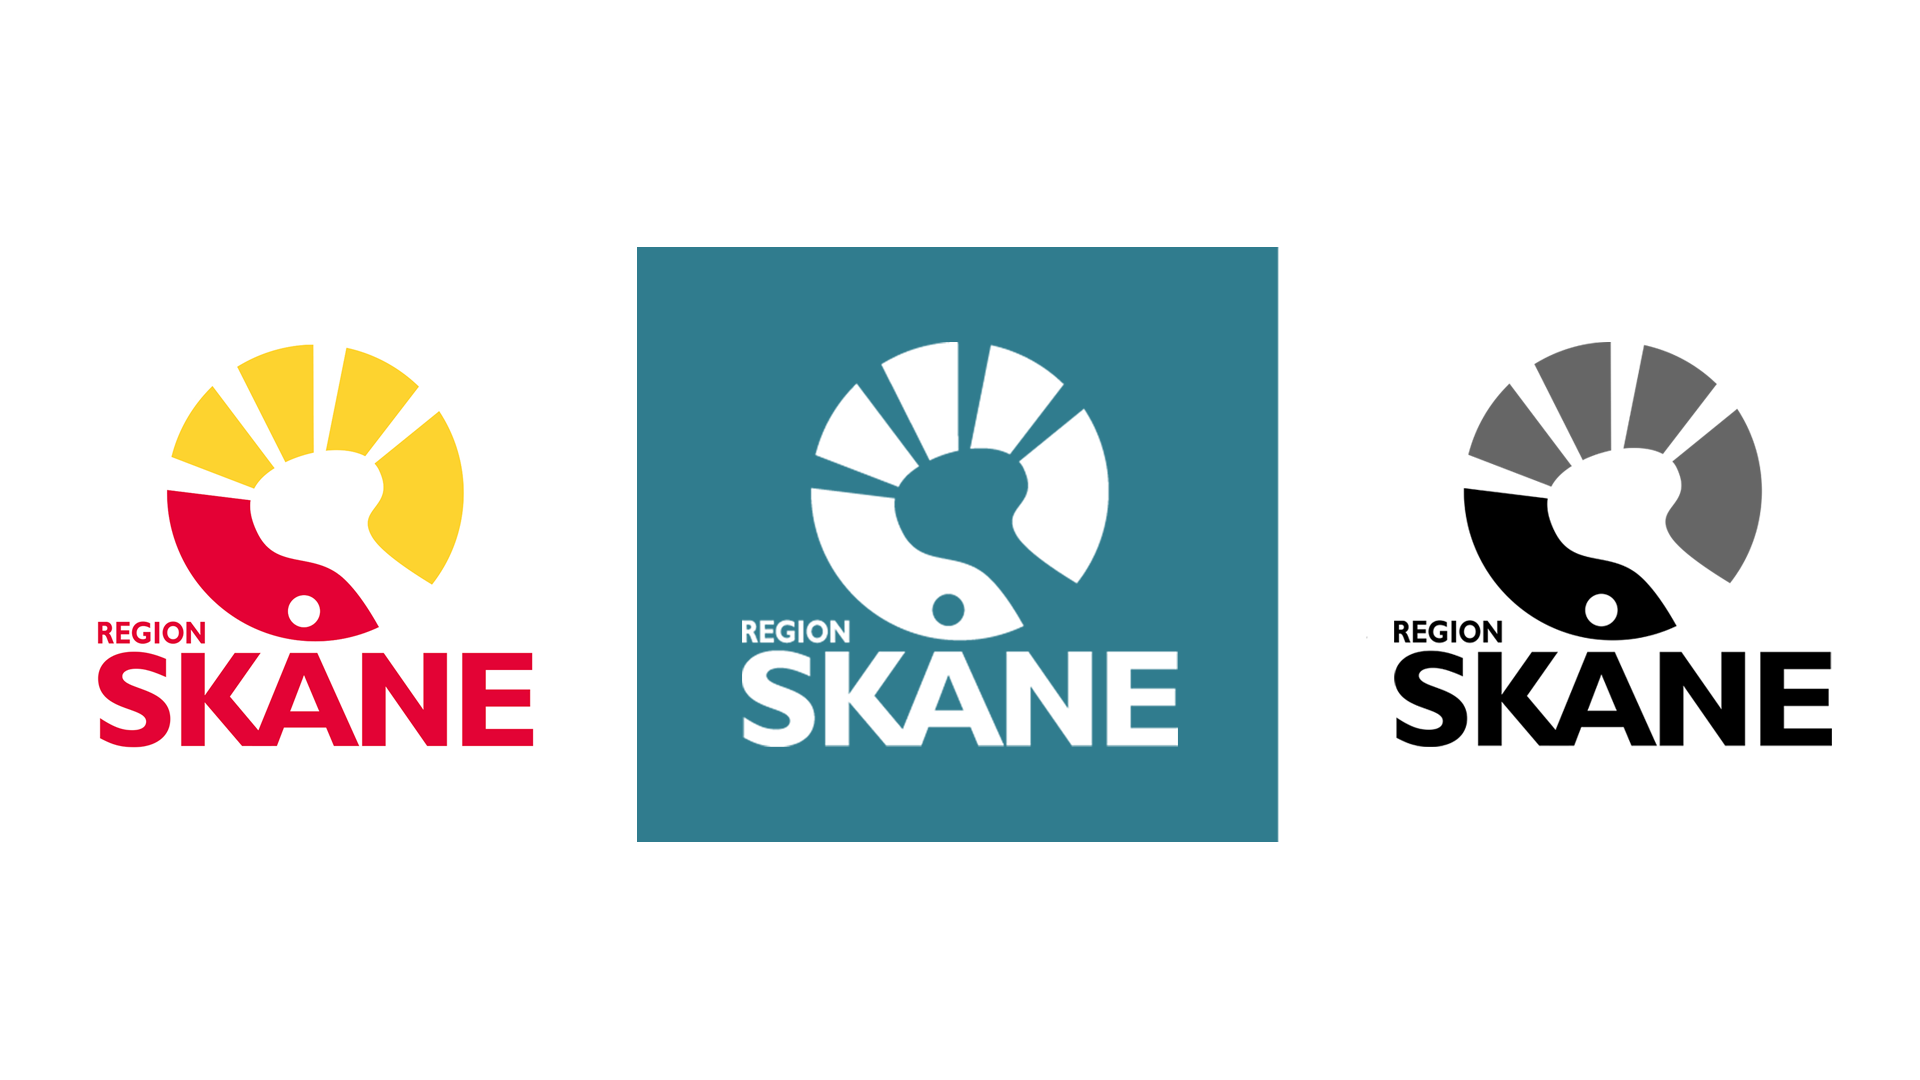 Region Skånes logotyp i tre versioner: fullfärg, vit och svart.